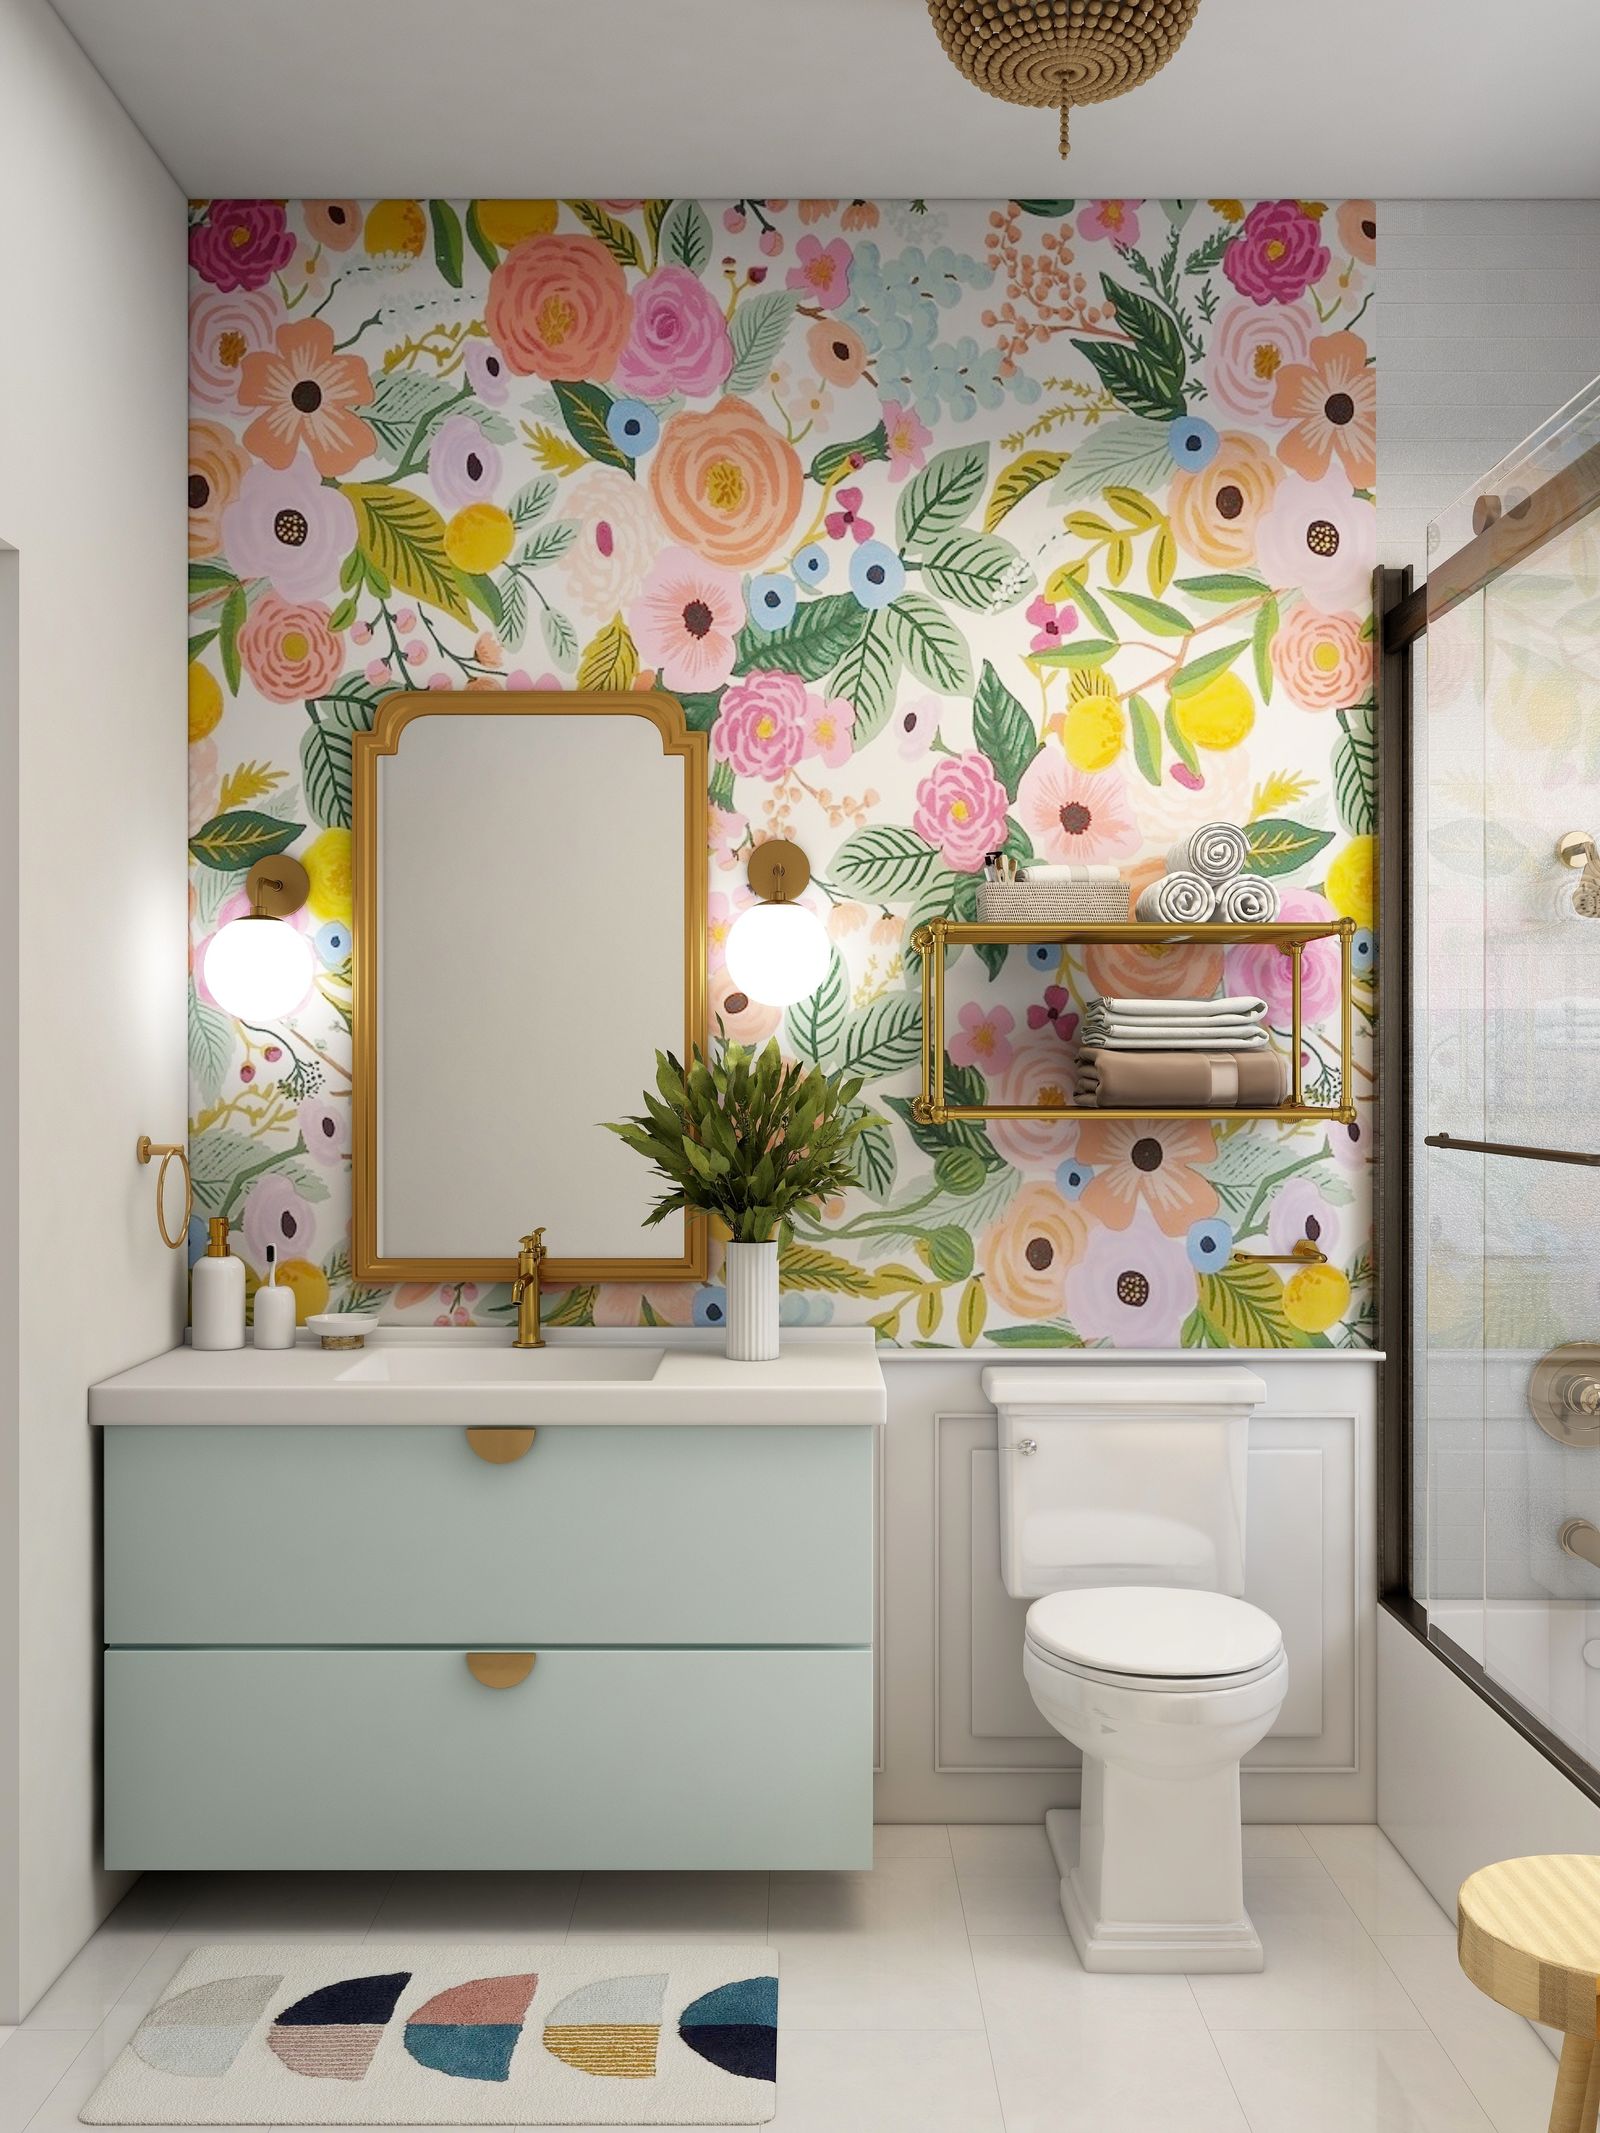 décoration murale salle de bains avec des motifs floraux